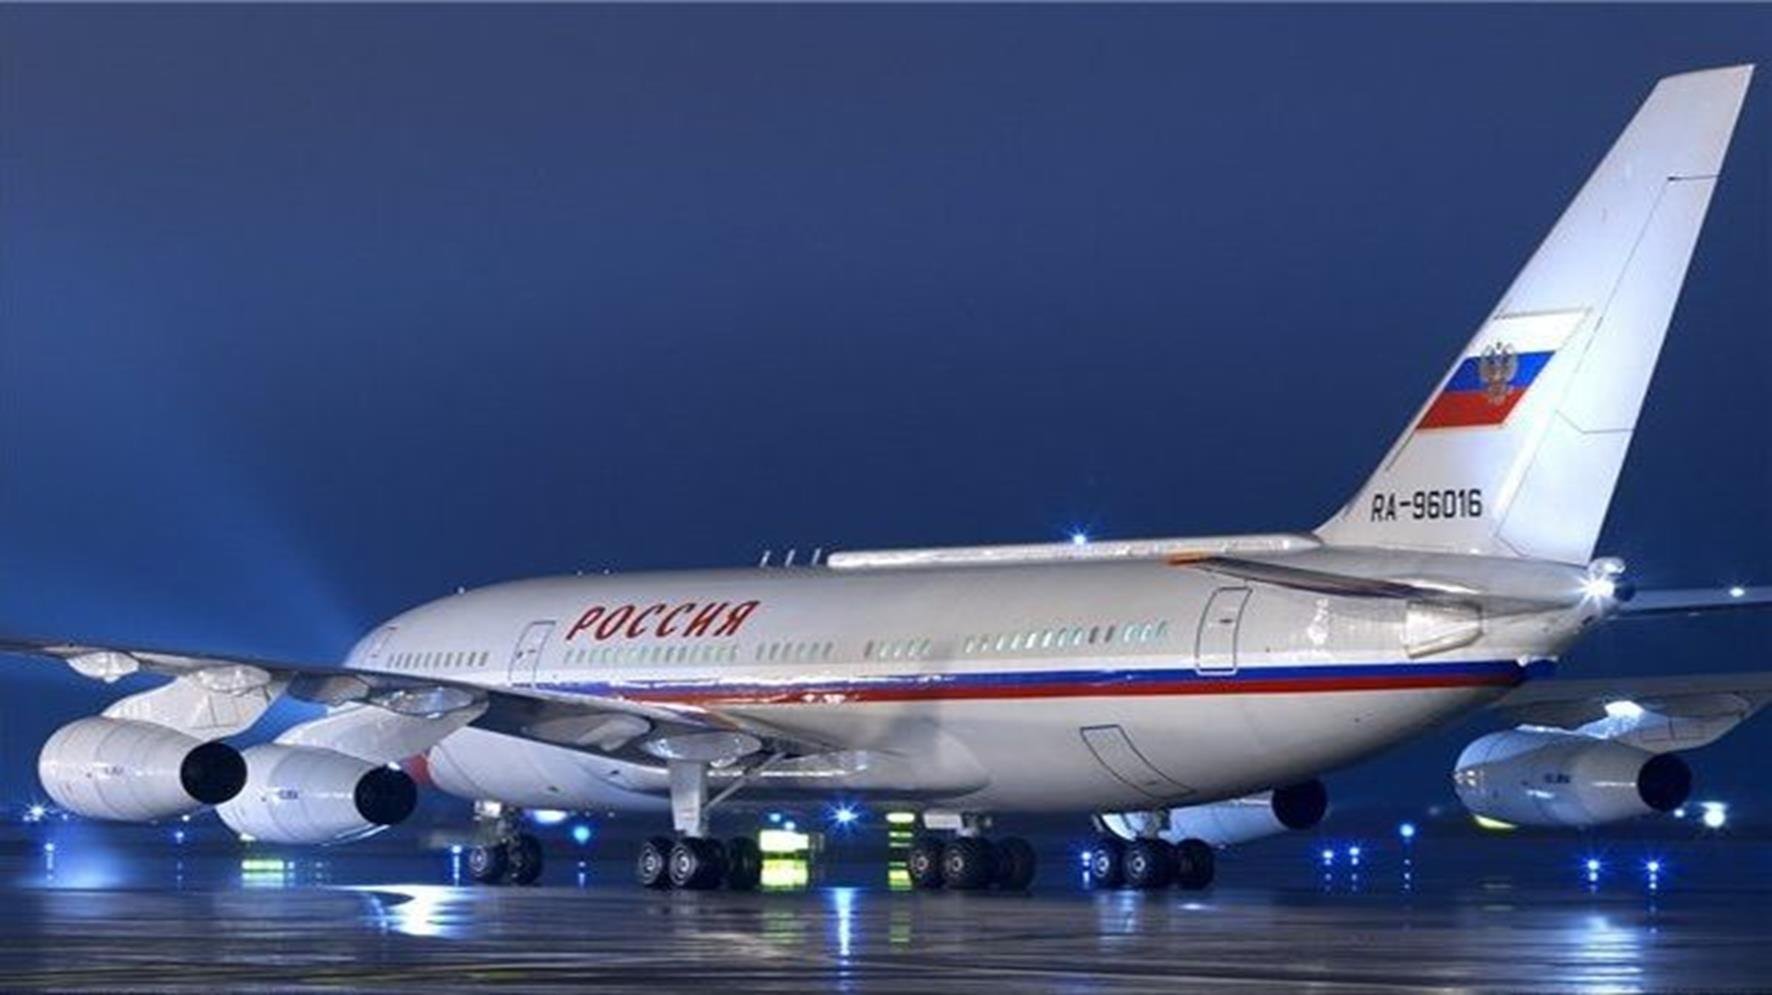 Президентский самолет. Самолет президента РФ ил-96-300. Ил 96 борт 1. Президентский самолет Путина ил-96. Ил 96 300 ПУ самолет президента.